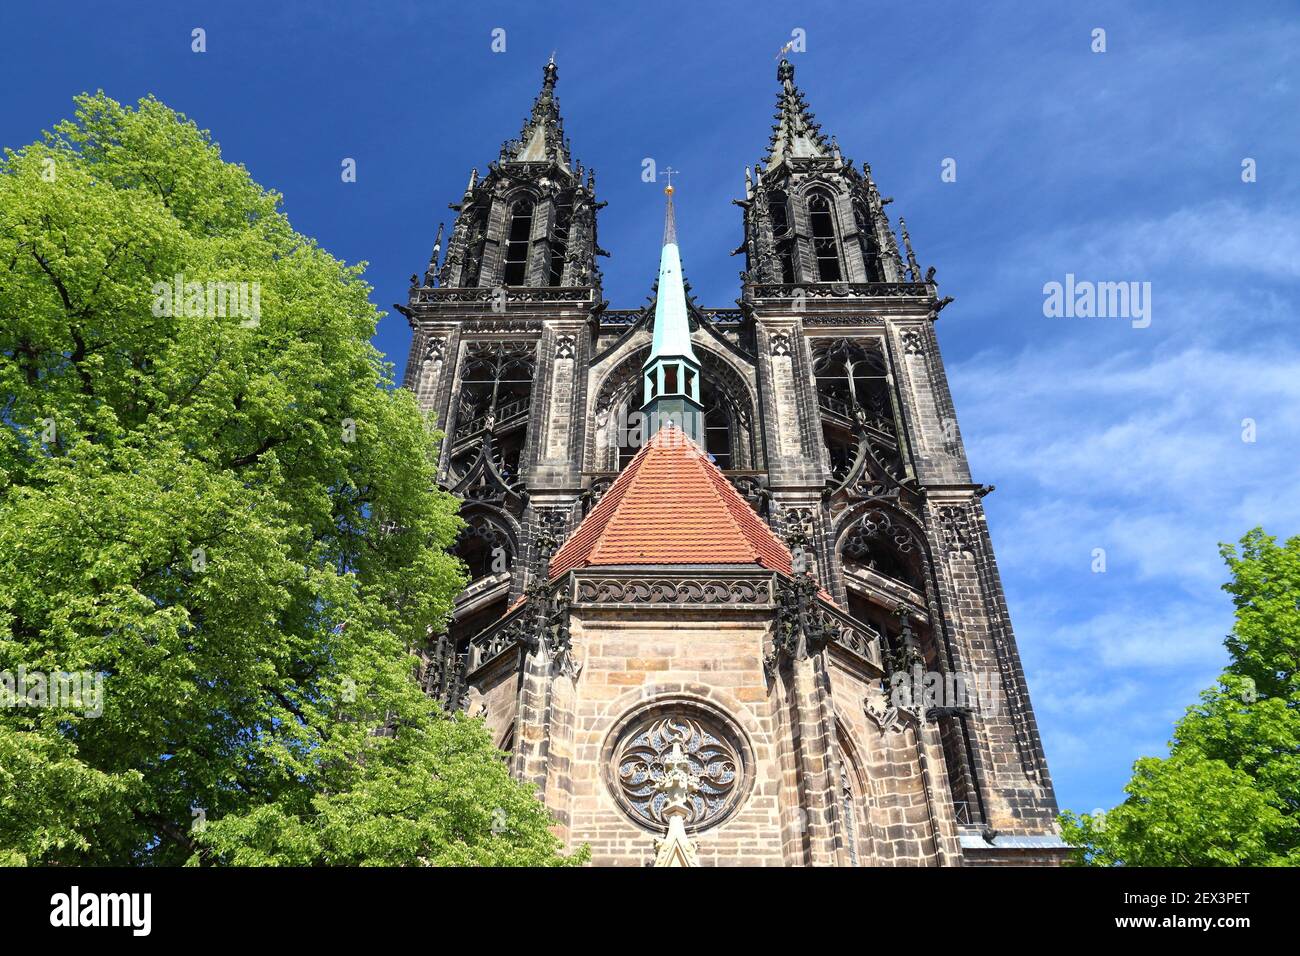 Cathédrale de Meissen (Meissner Dom) en Allemagne. Monuments allemands. Banque D'Images